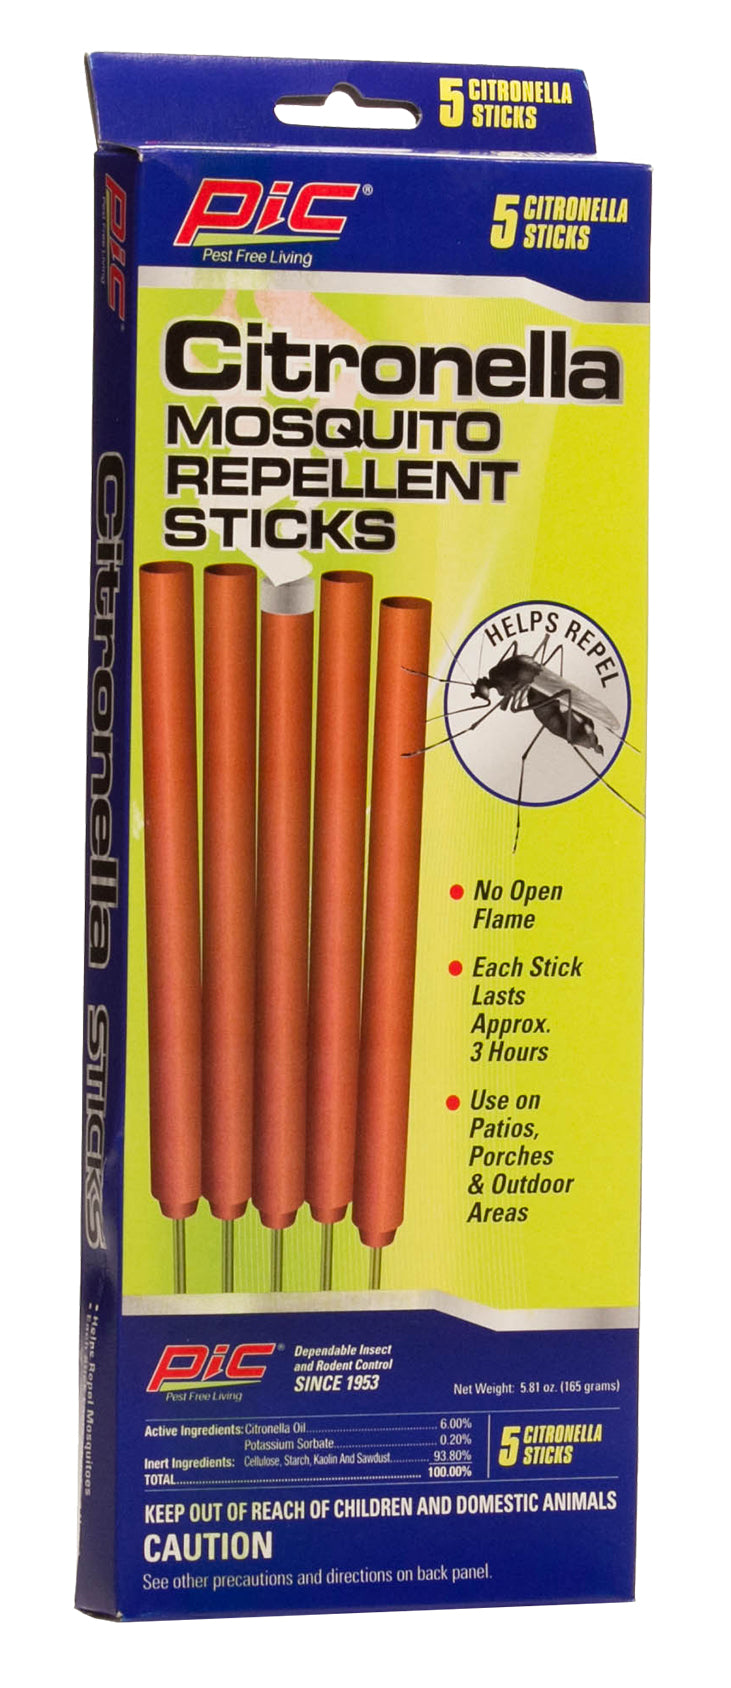 Pic CIT-STK Mosquito Repellent Sticks